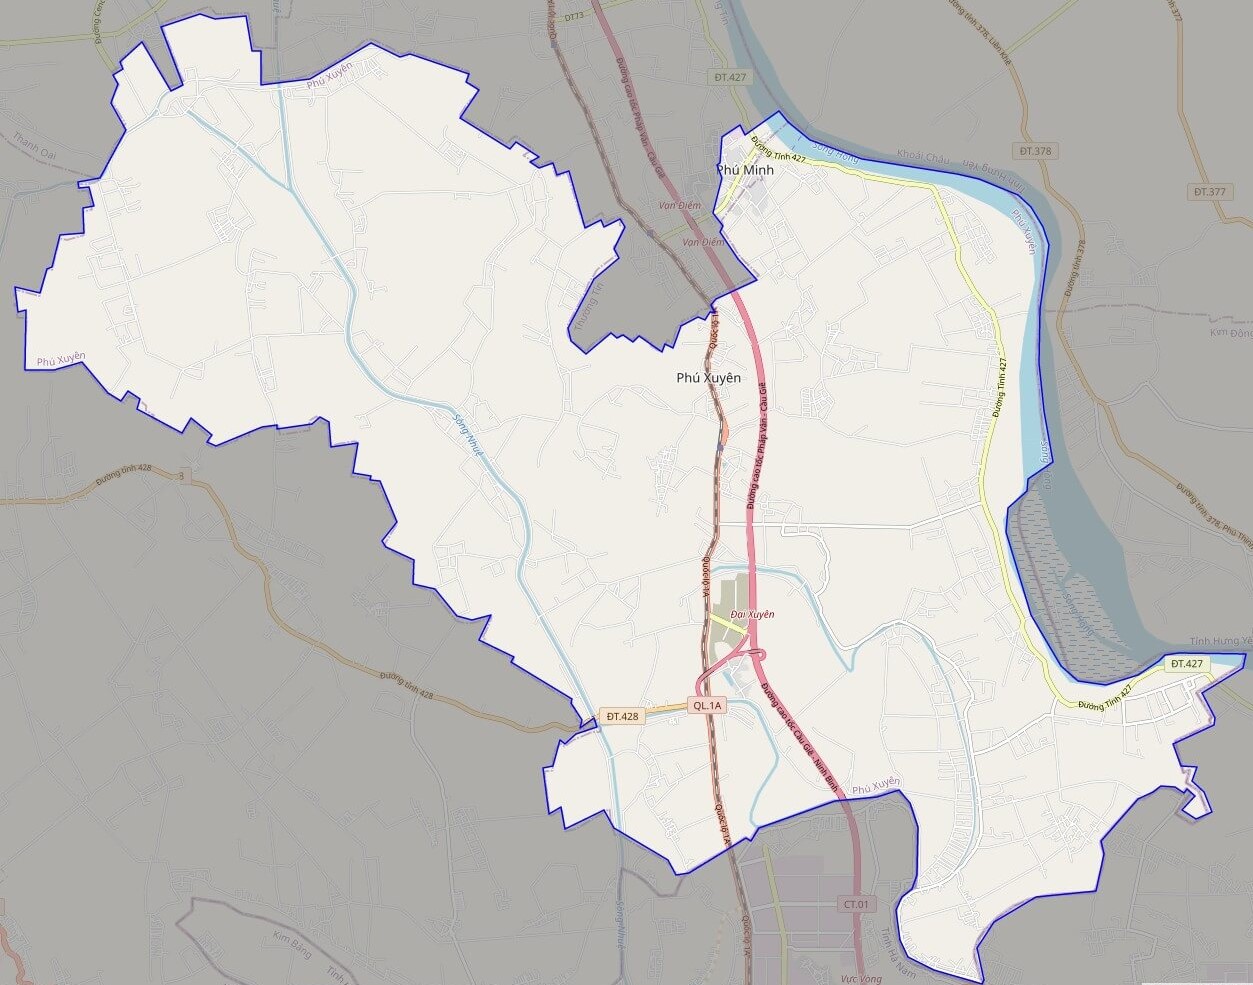 Bản đồ hành chính Huyện Phú Xuyên: Khám phá bản đồ hành chính Huyện Phú Xuyên để tìm hiểu về điểm đến du lịch hấp dẫn, hệ thống giao thông tiện lợi và các tổ chức xã hội quan trọng. Chúng tôi hy vọng bản đồ này sẽ giúp bạn có được cái nhìn tổng quan về Huyện Phú Xuyên và cộng đồng nơi đây.